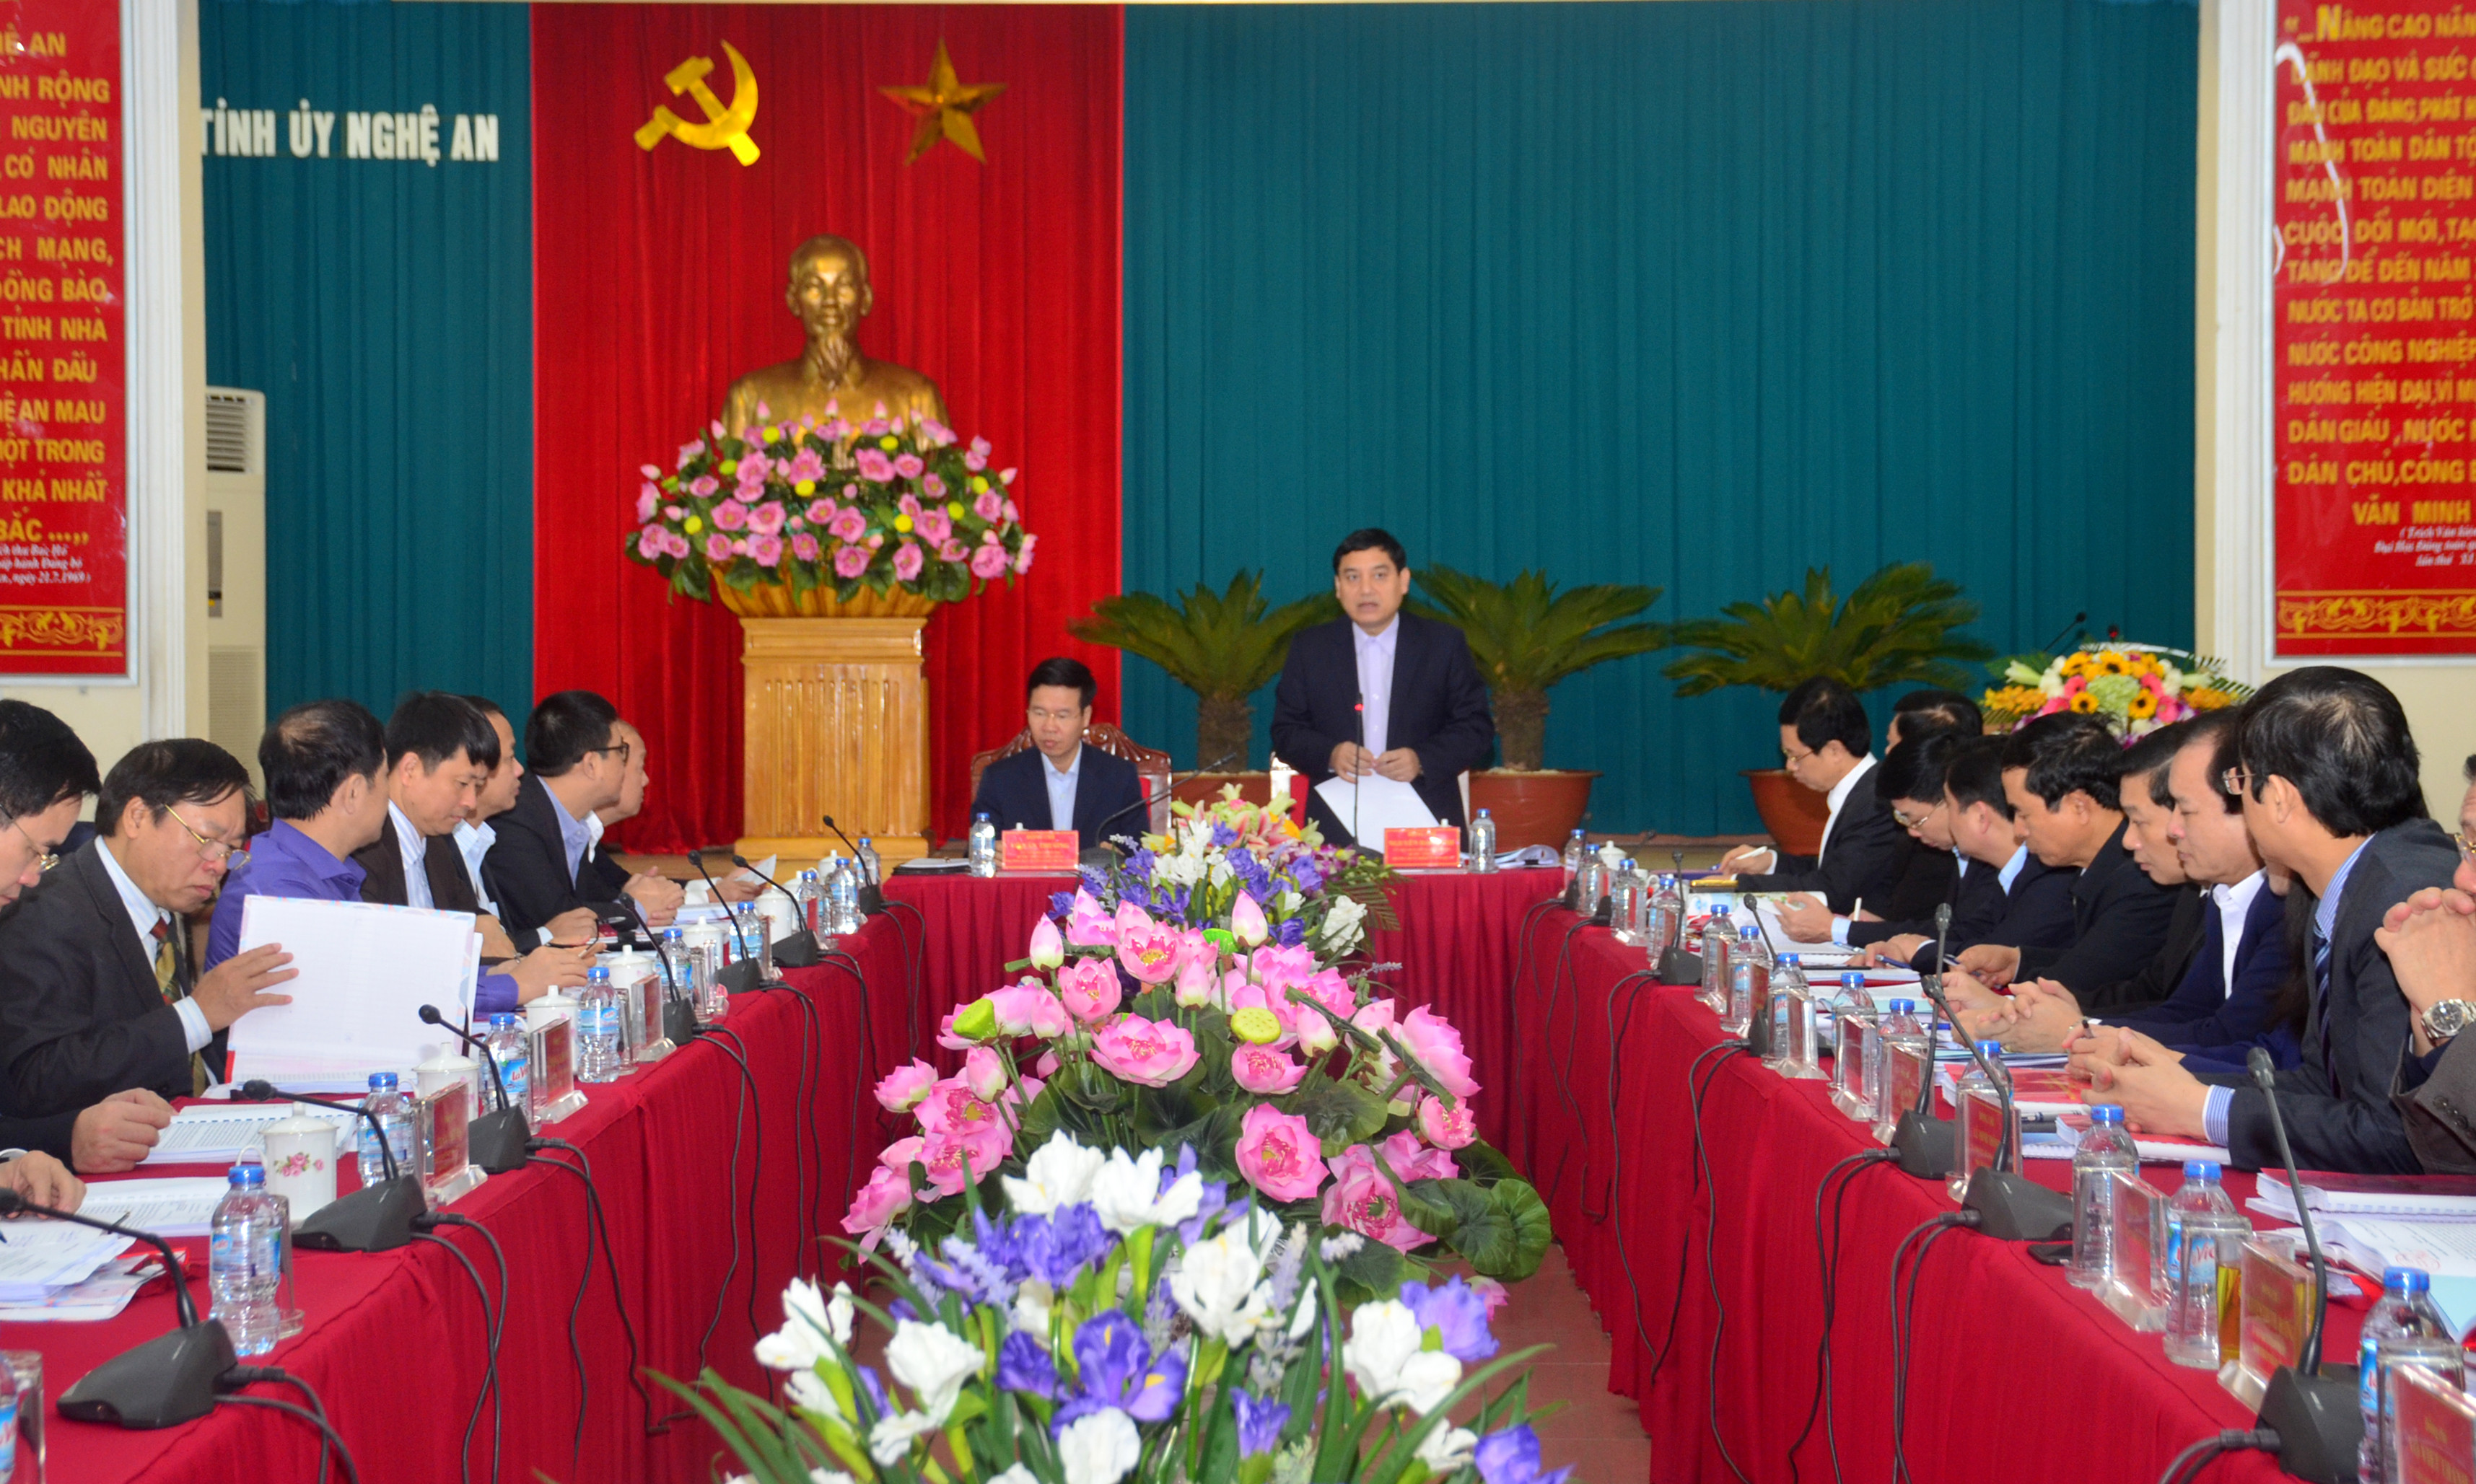 Đồng chí Nguyễn Đắc Vinh phát biểu tiếp thu ý kiến chỉ đạo tại hội nghị. Ảnh: Thành Duy